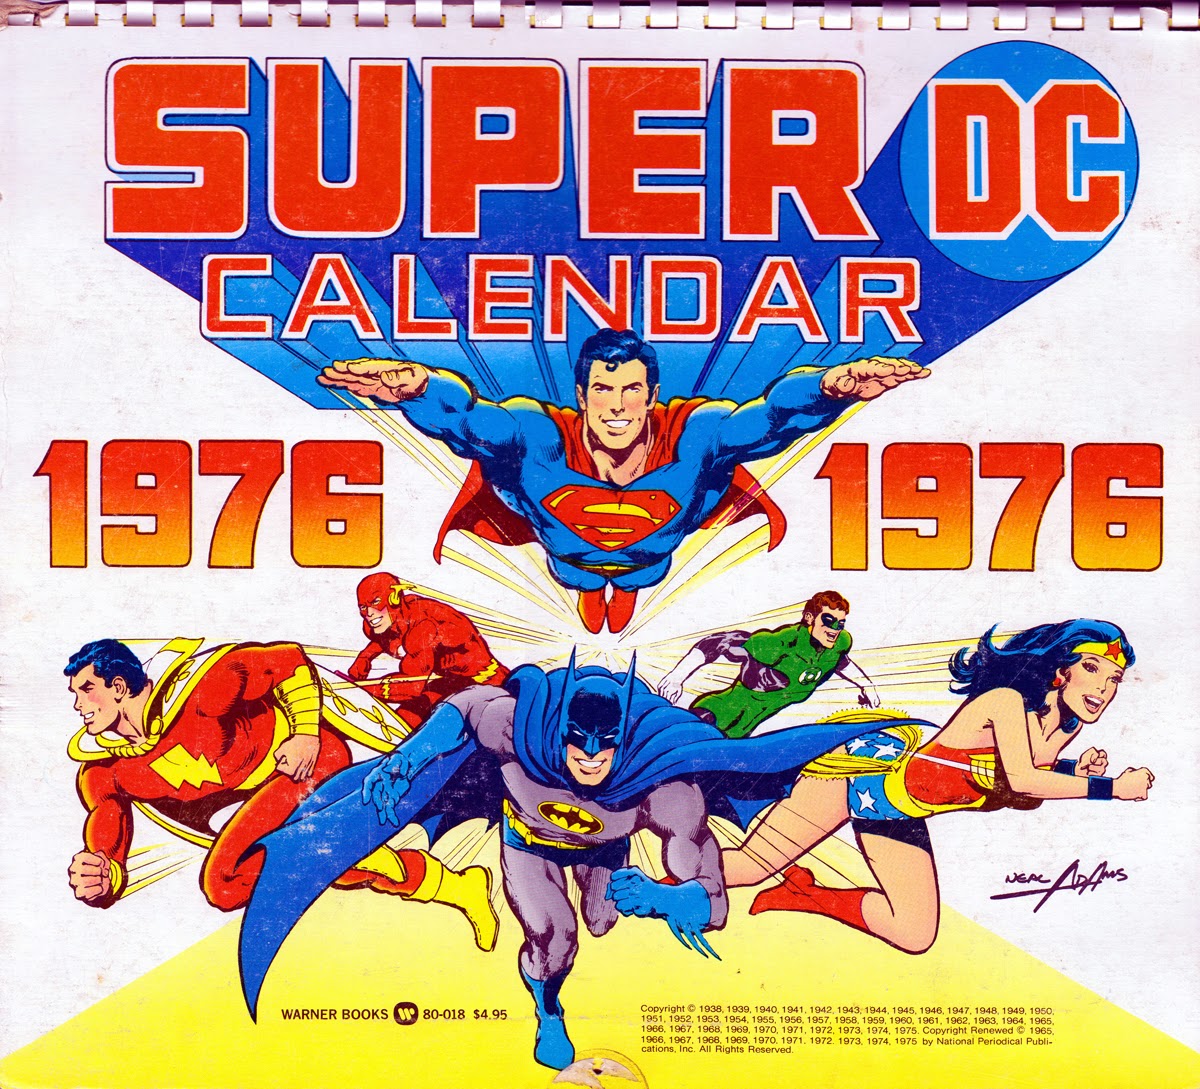 Gone & THE SUPER DC 1976 CALENDAR